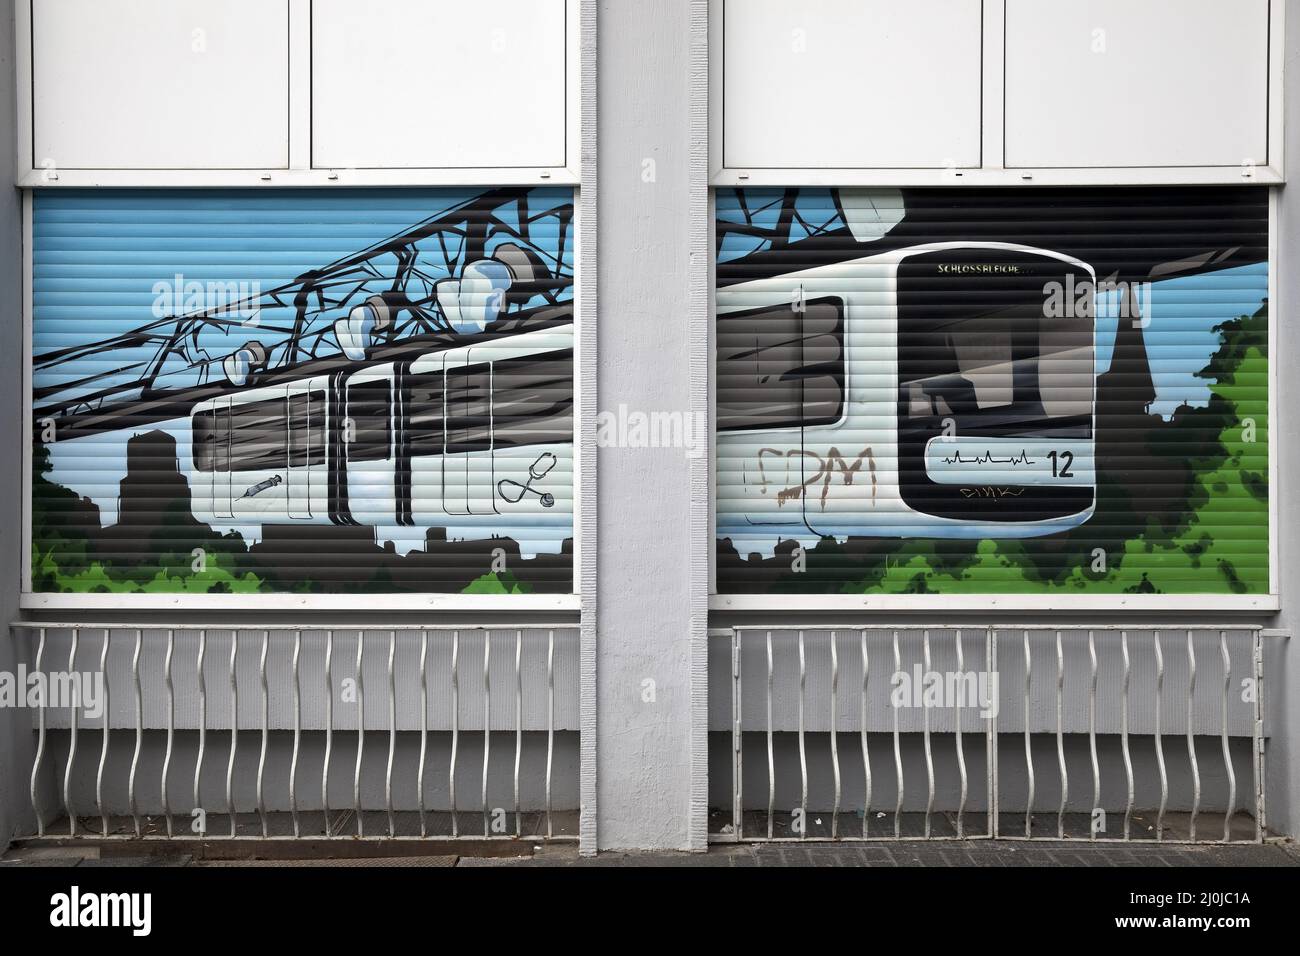 Hängeschienenbahn auf Rollläden im Zentrum von Elberfeld, Wuppertal, Deutschland, Europa Stockfoto